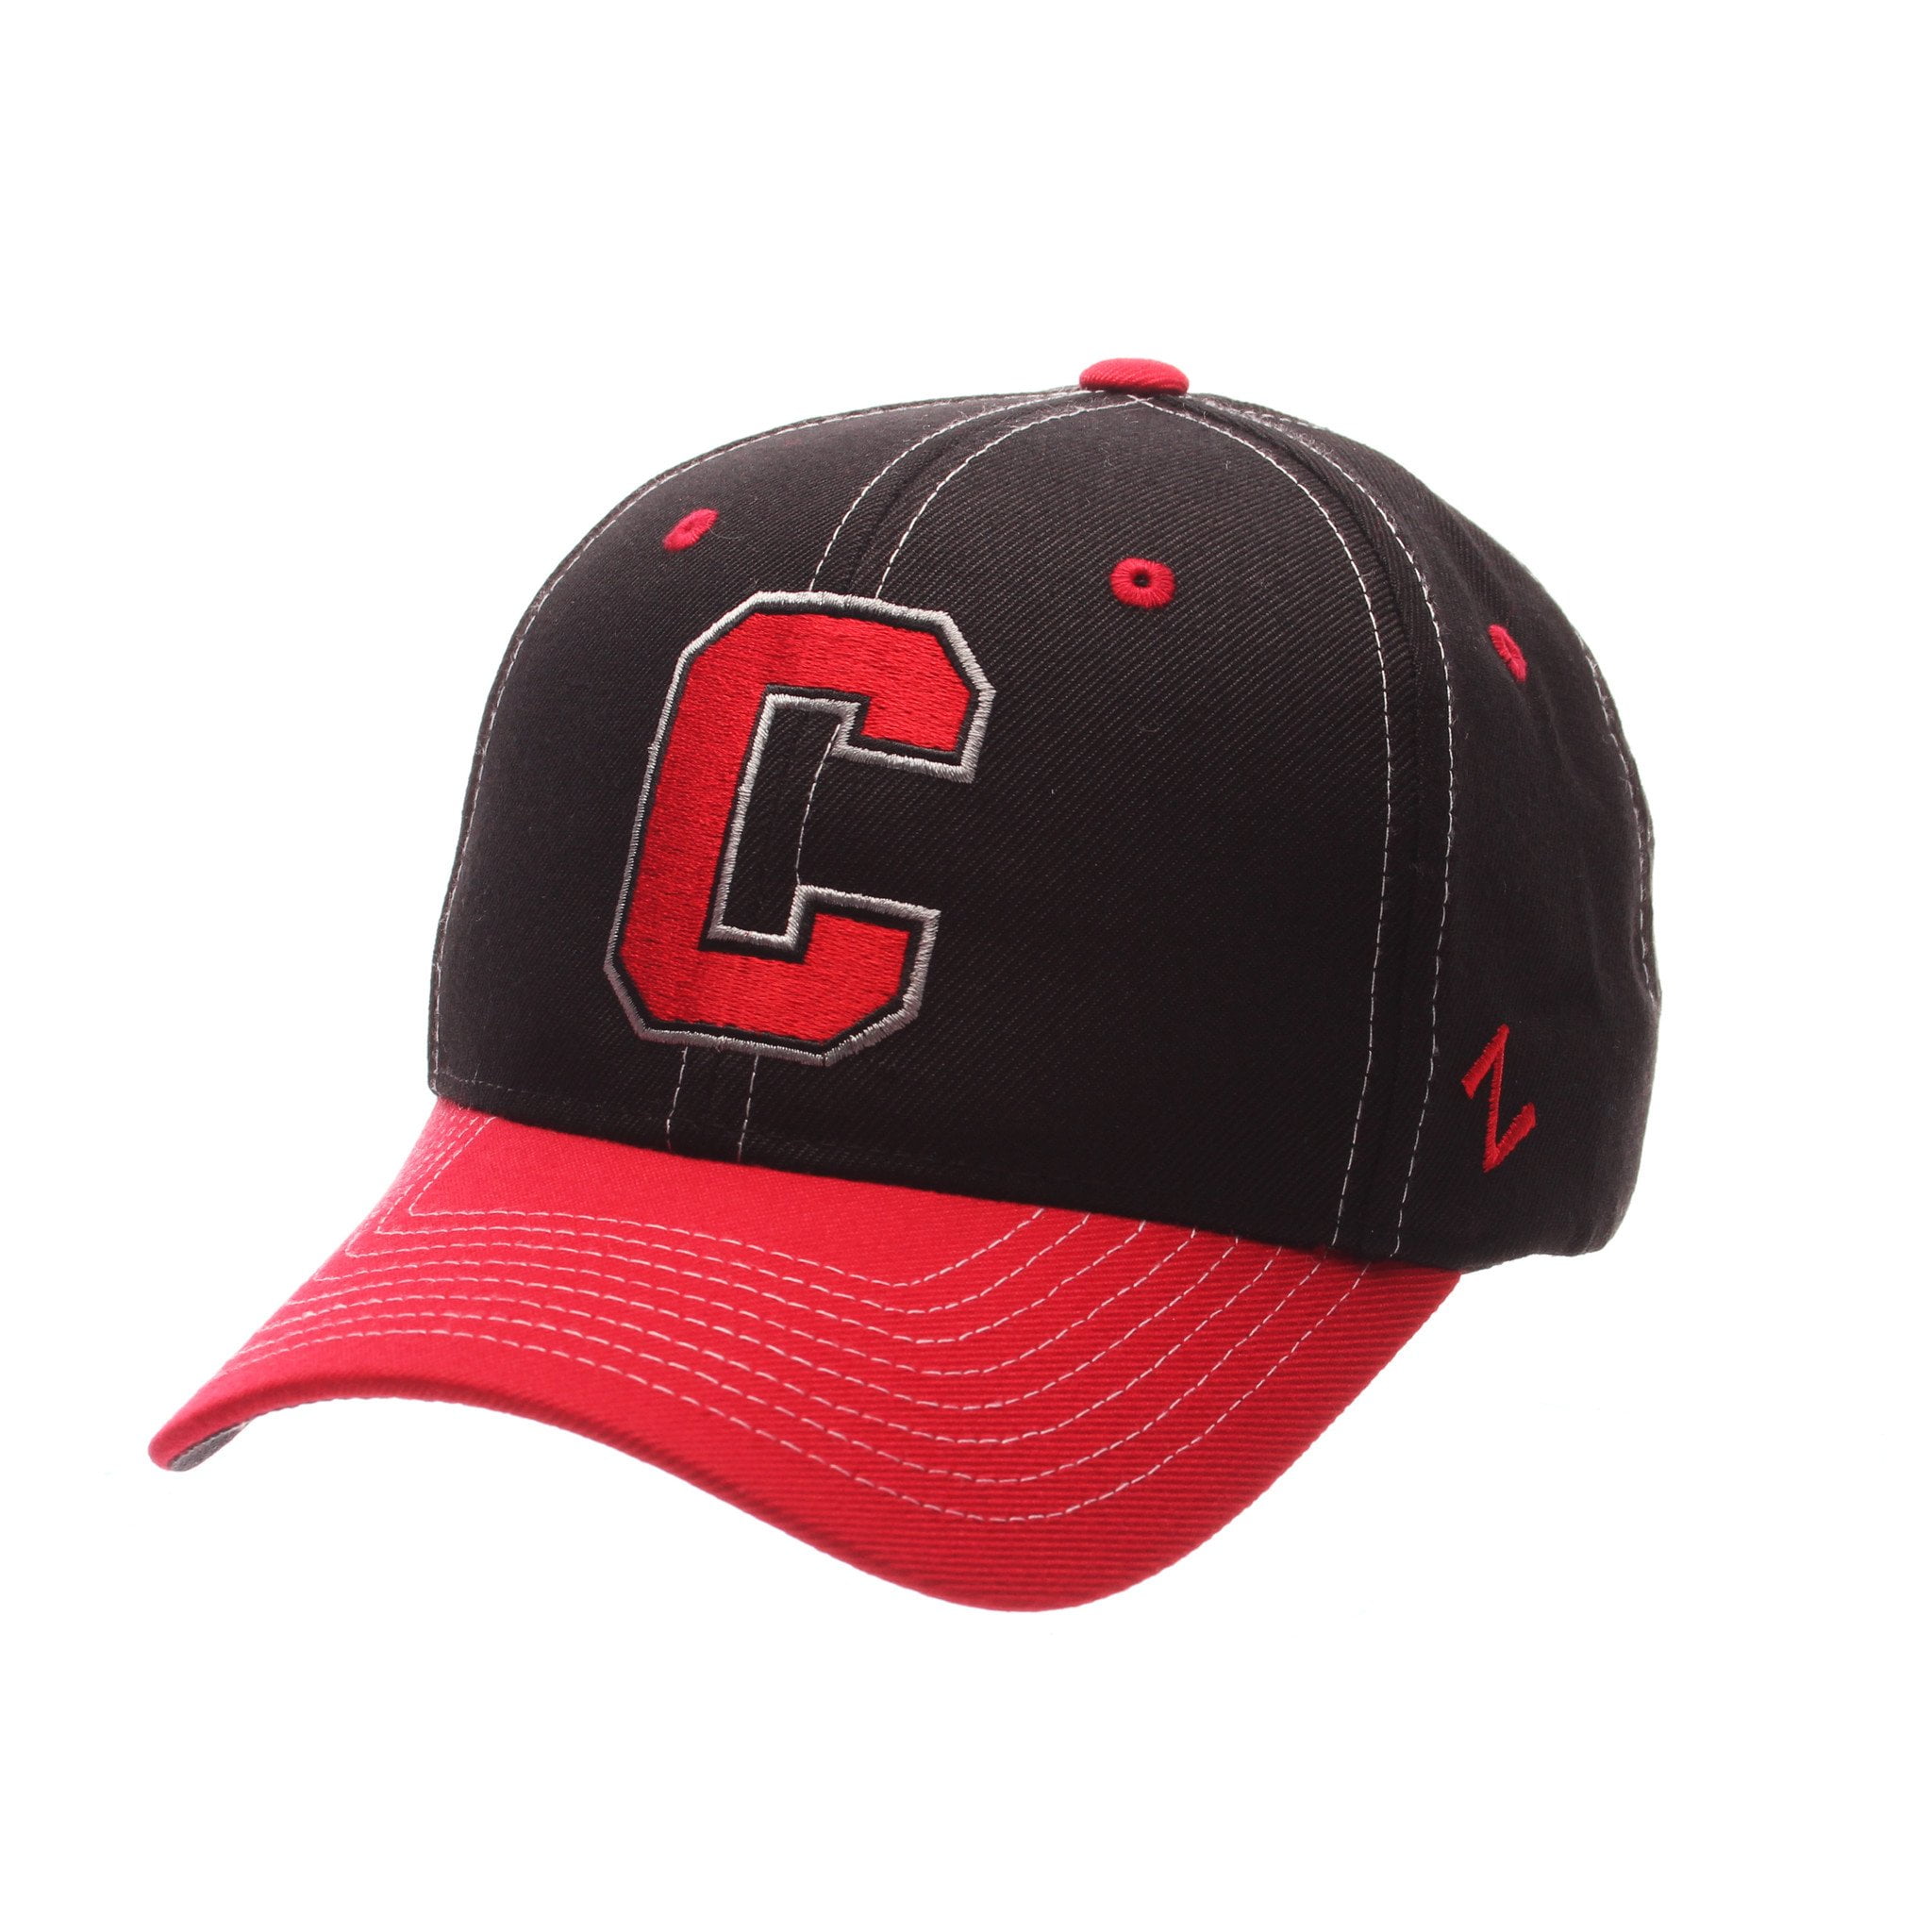 CORVETTE EST 1953 Red Baseball Hat 686184 